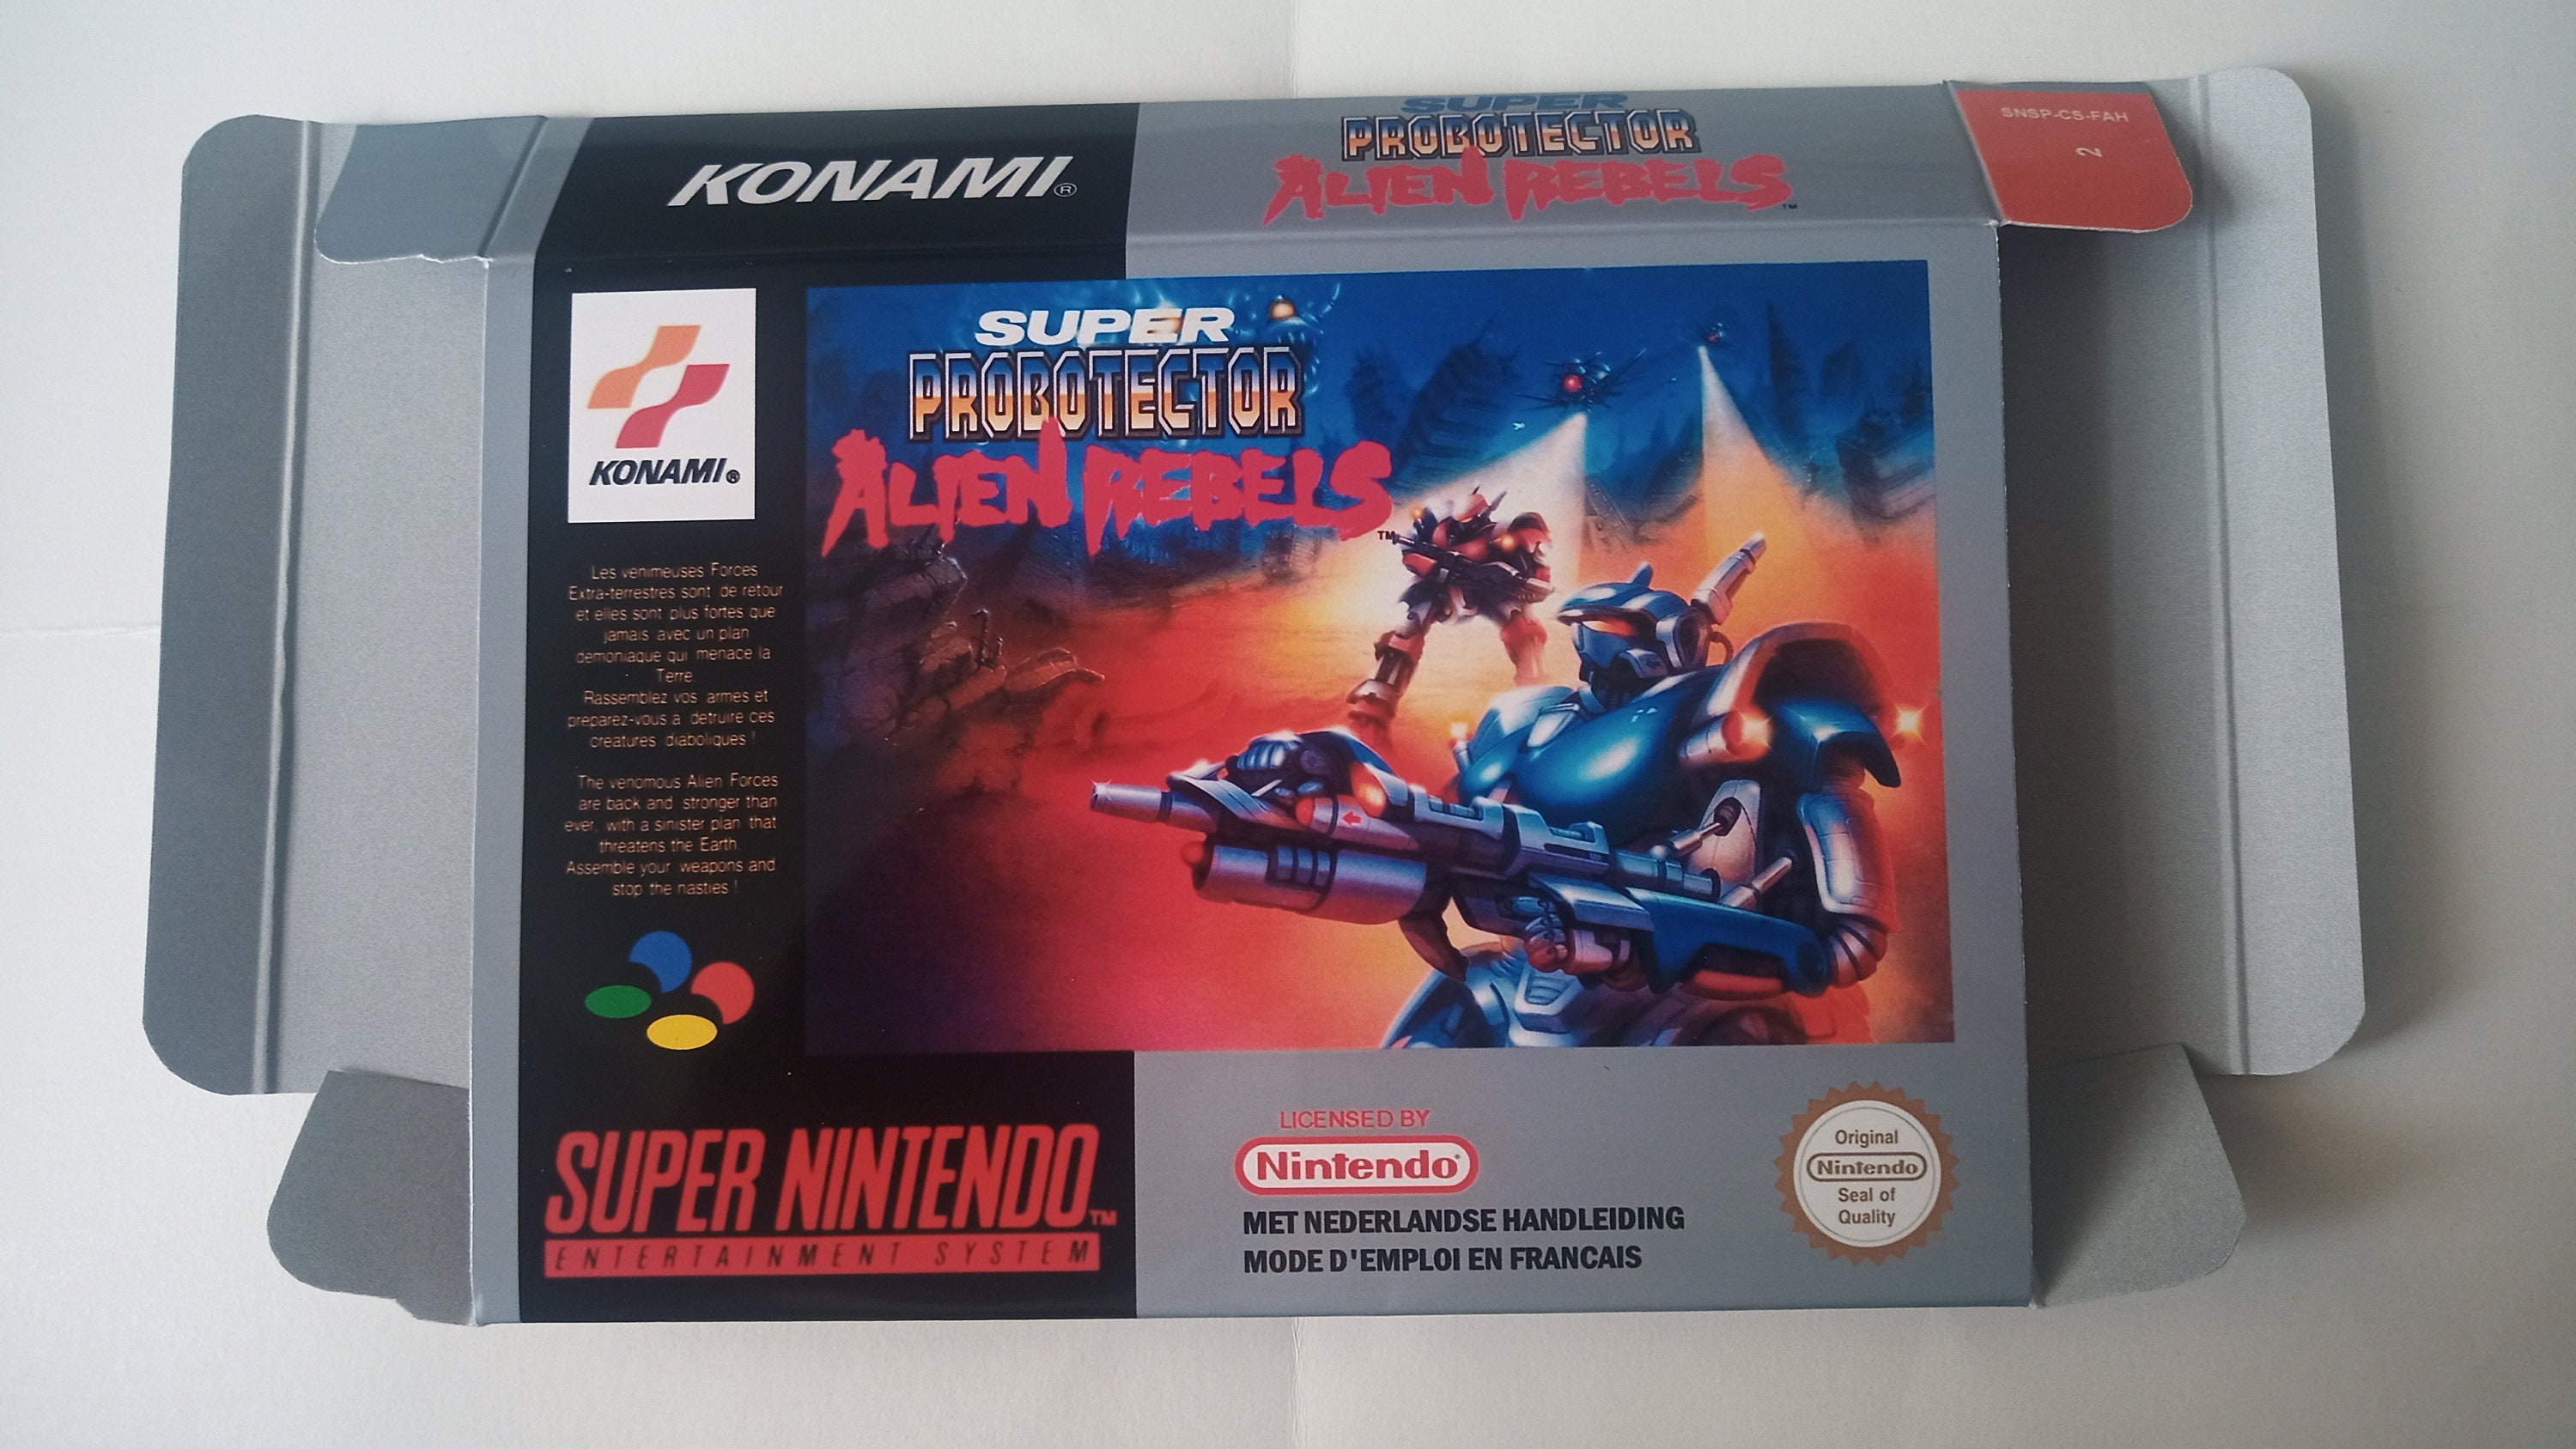 Super Nintendo Super Probotector Alien Rebels Box English / - Etsy Israel